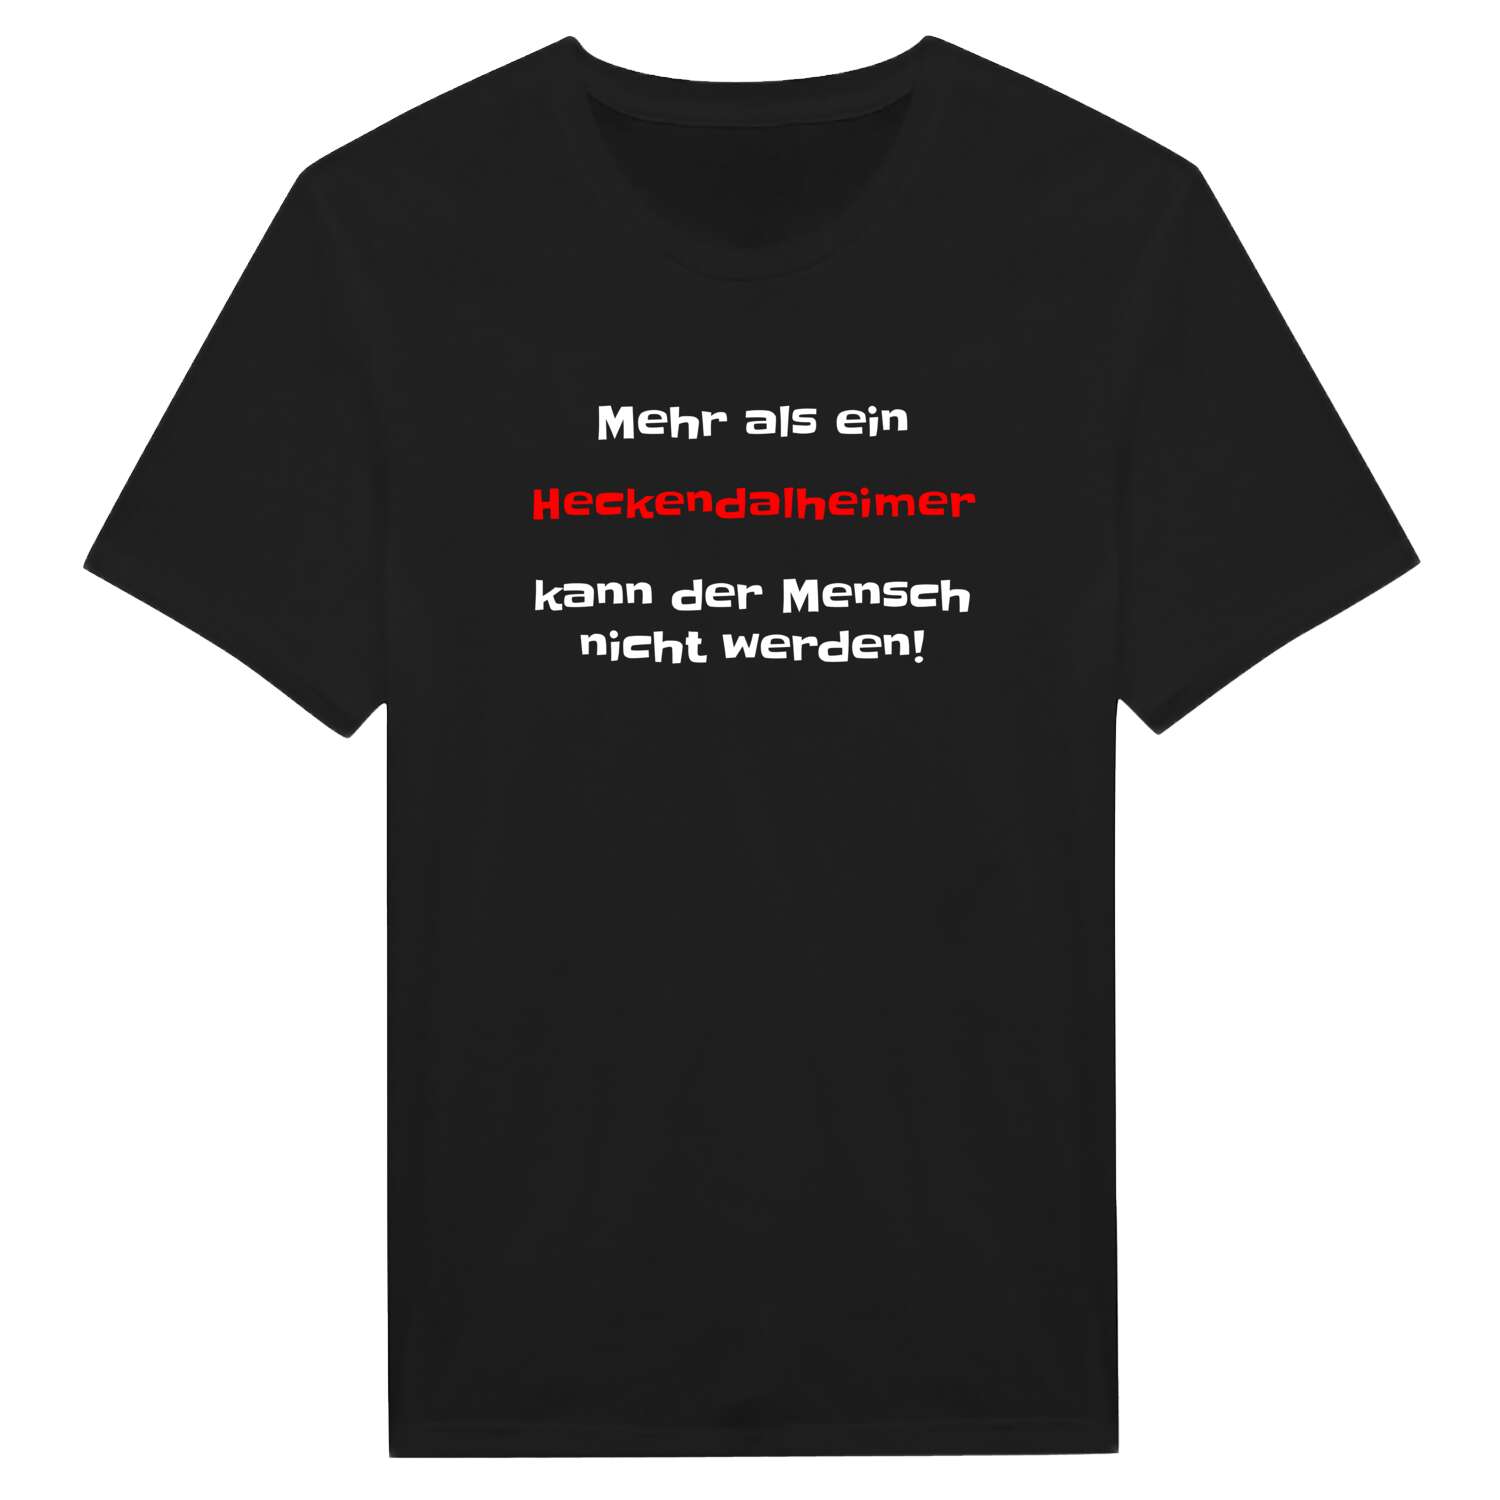 Heckendalheim T-Shirt »Mehr als ein«